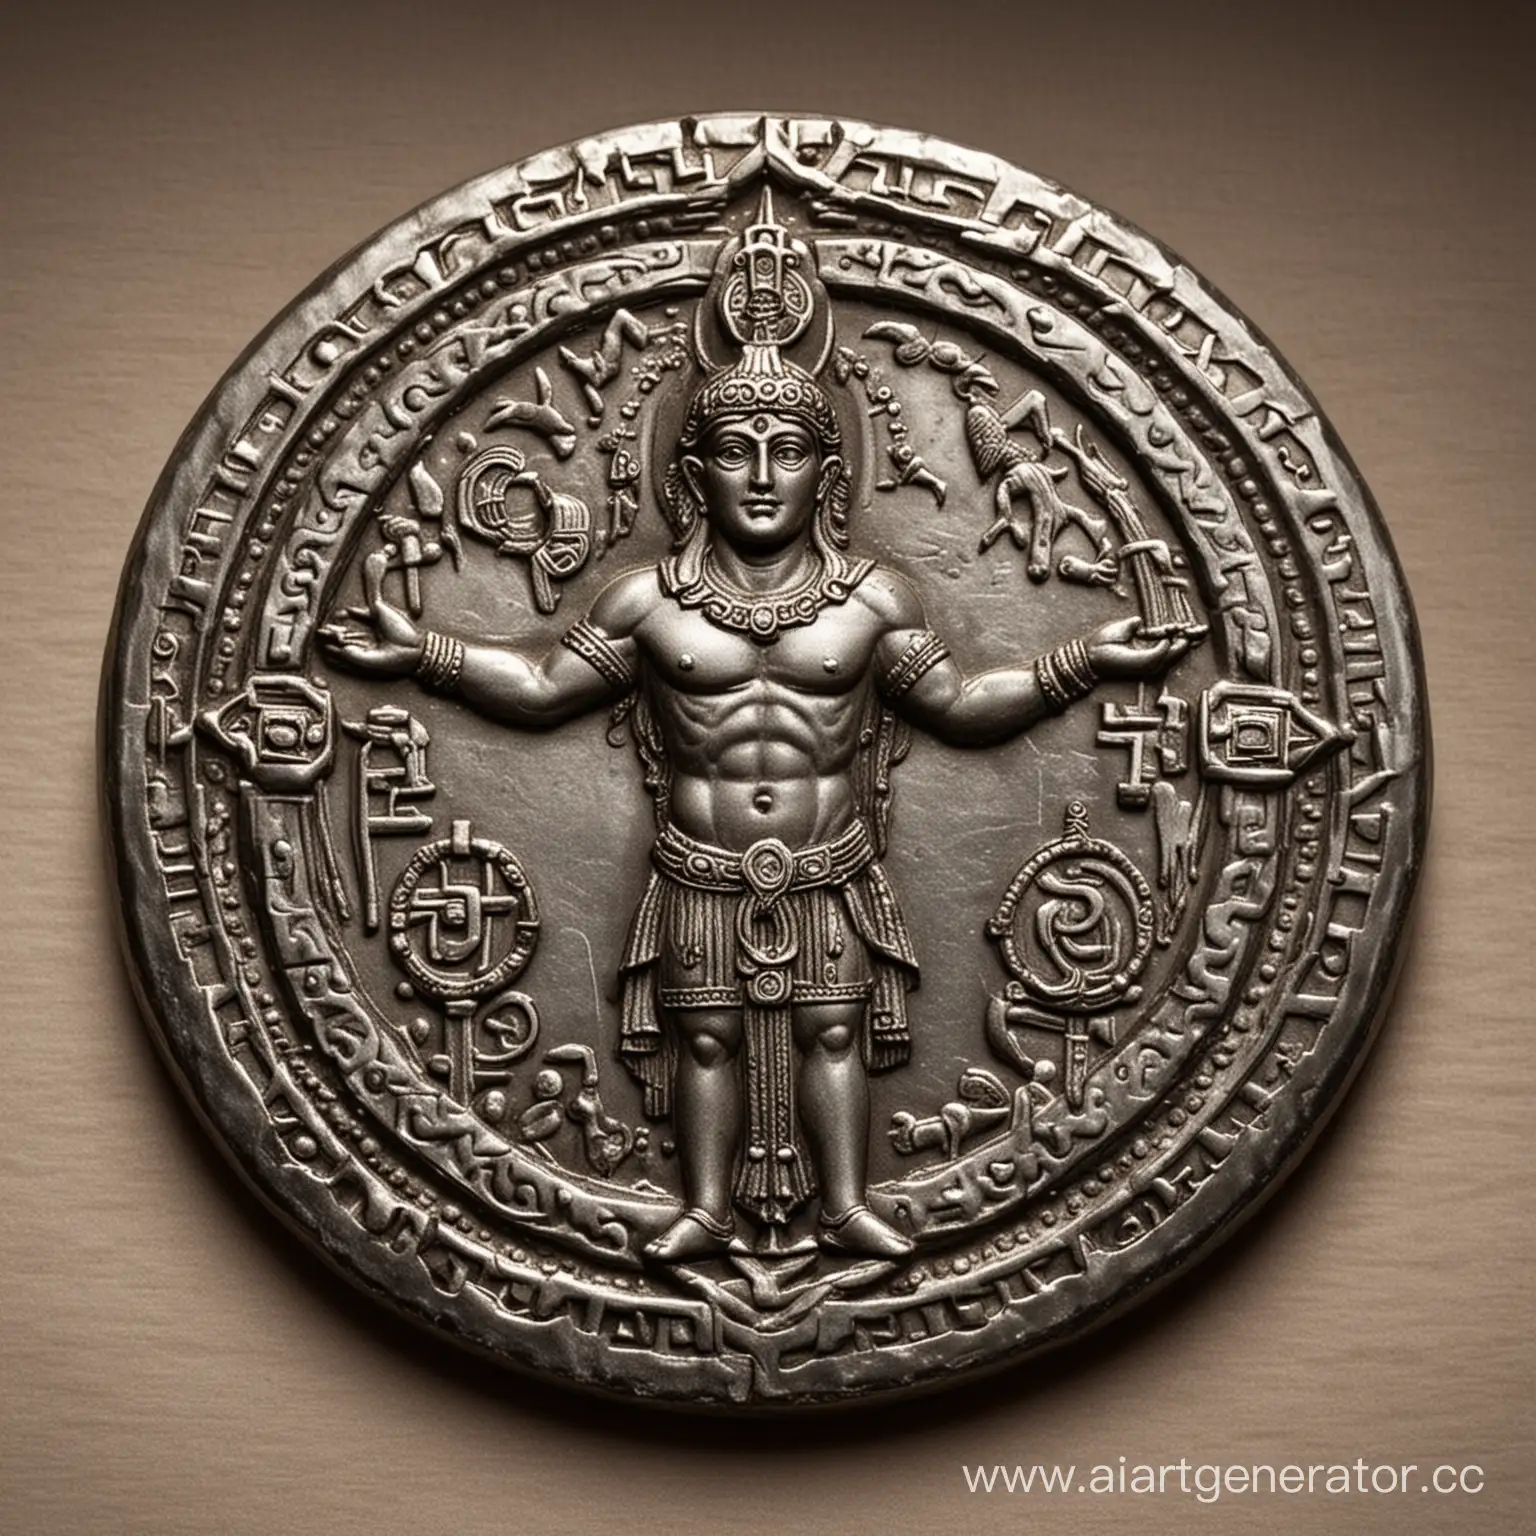 монета которая приносит удачу с мифологической символикой в руках бога
